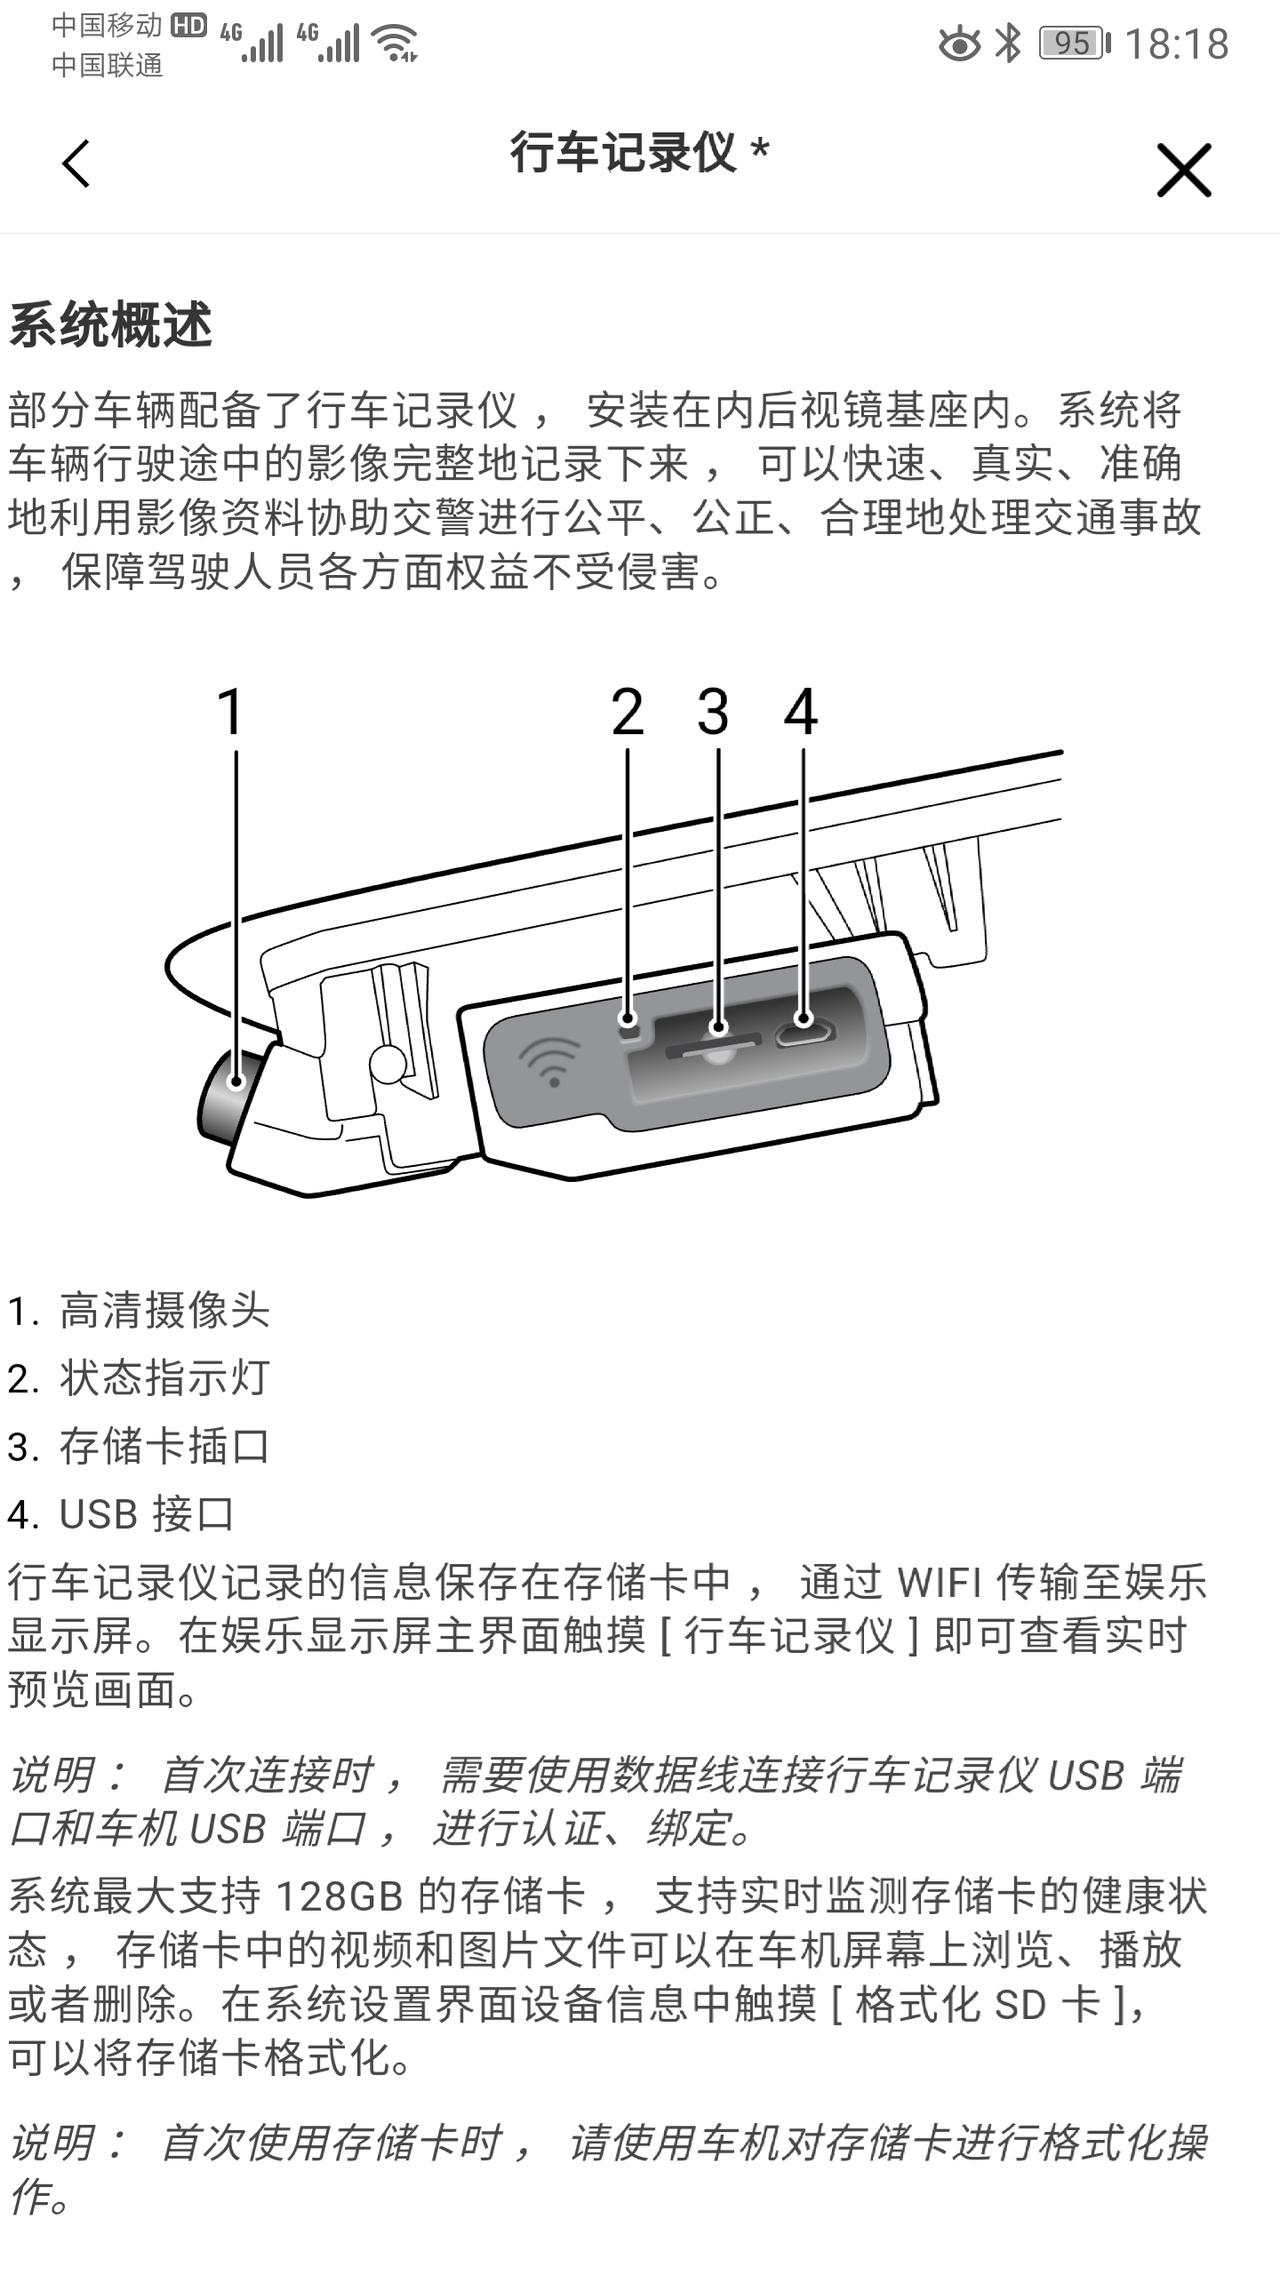 荣威iMAX8 行车记录仪问题：车主手册上说，首次连接时 ， 需要使用数据线连接行车记录仪 USB 端口和车机 USB 